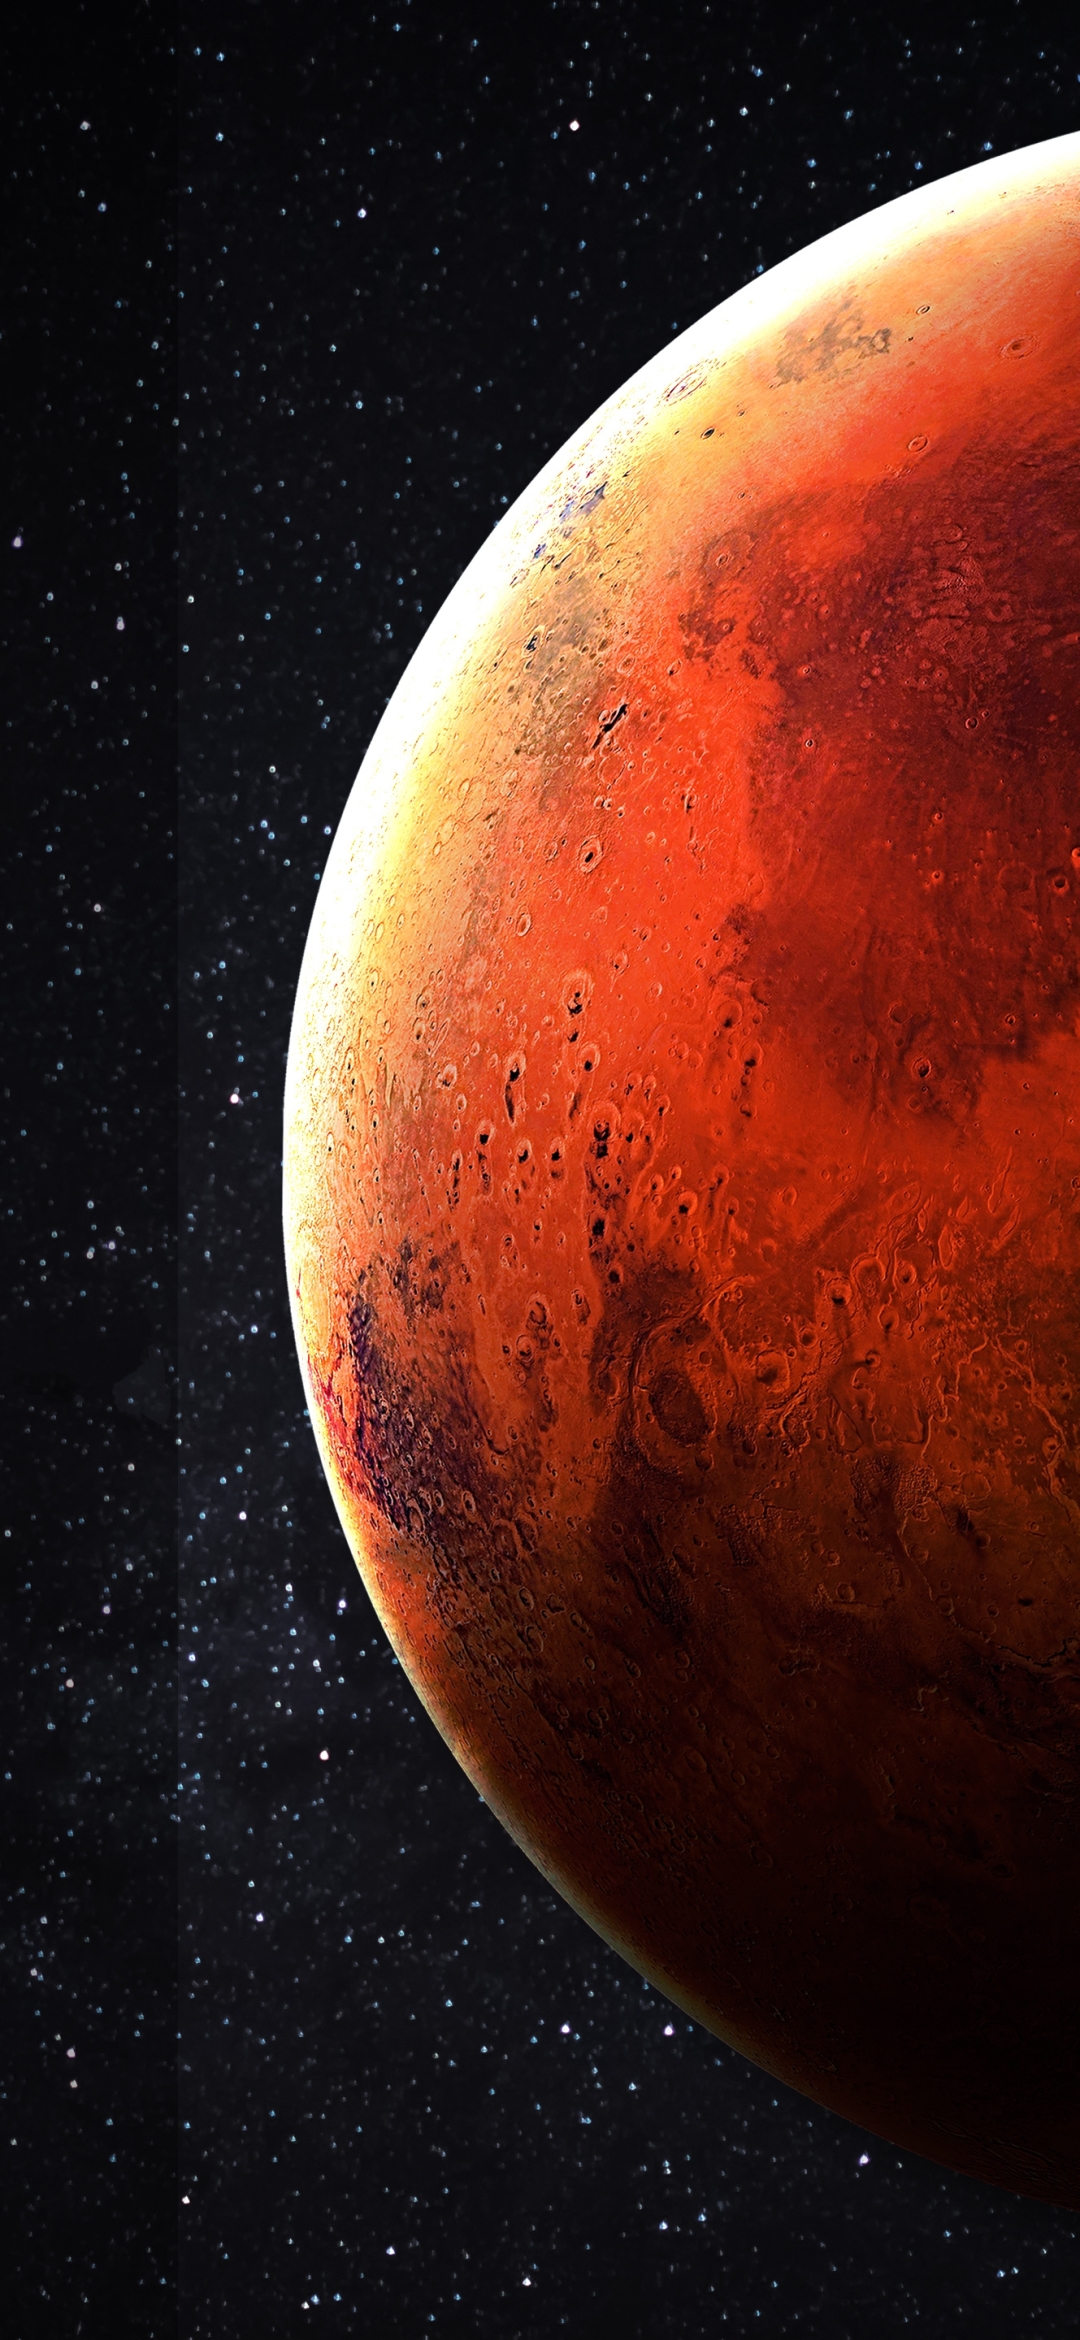 Descarga gratuita de fondo de pantalla para móvil de Ciencia Ficción, Marte.